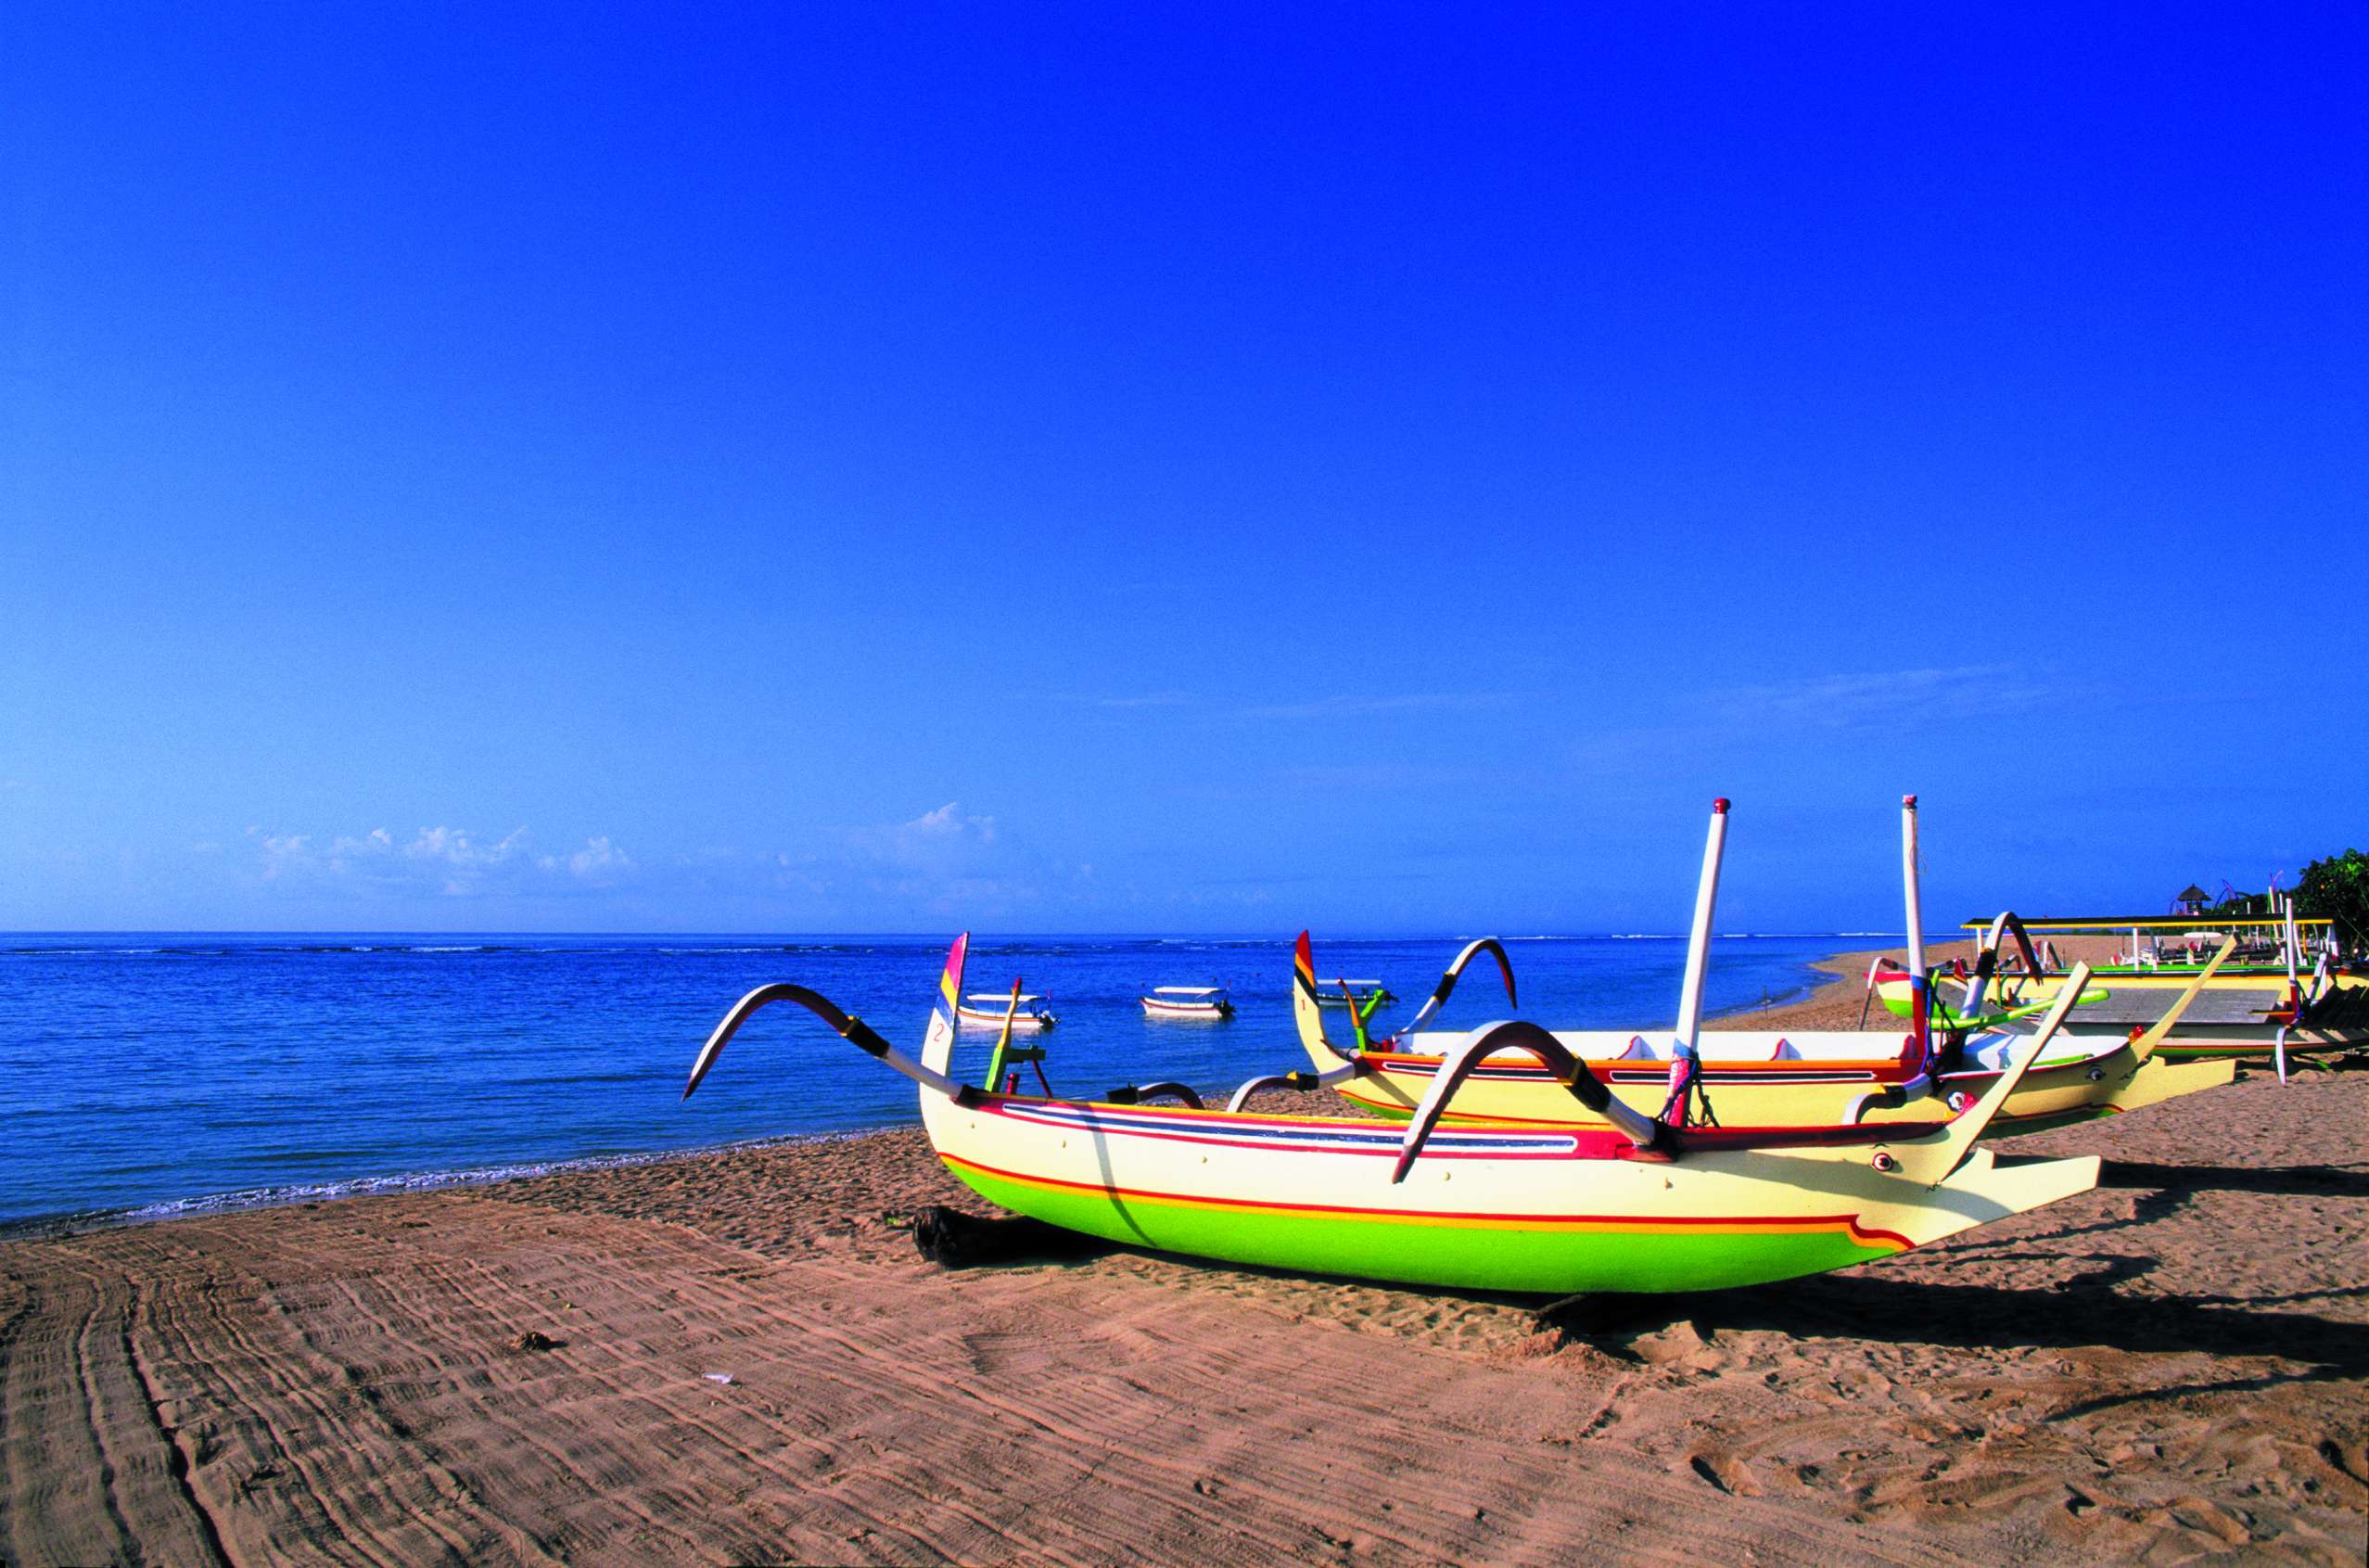 Bateaux typiques sur la plage de Nusa Dua.